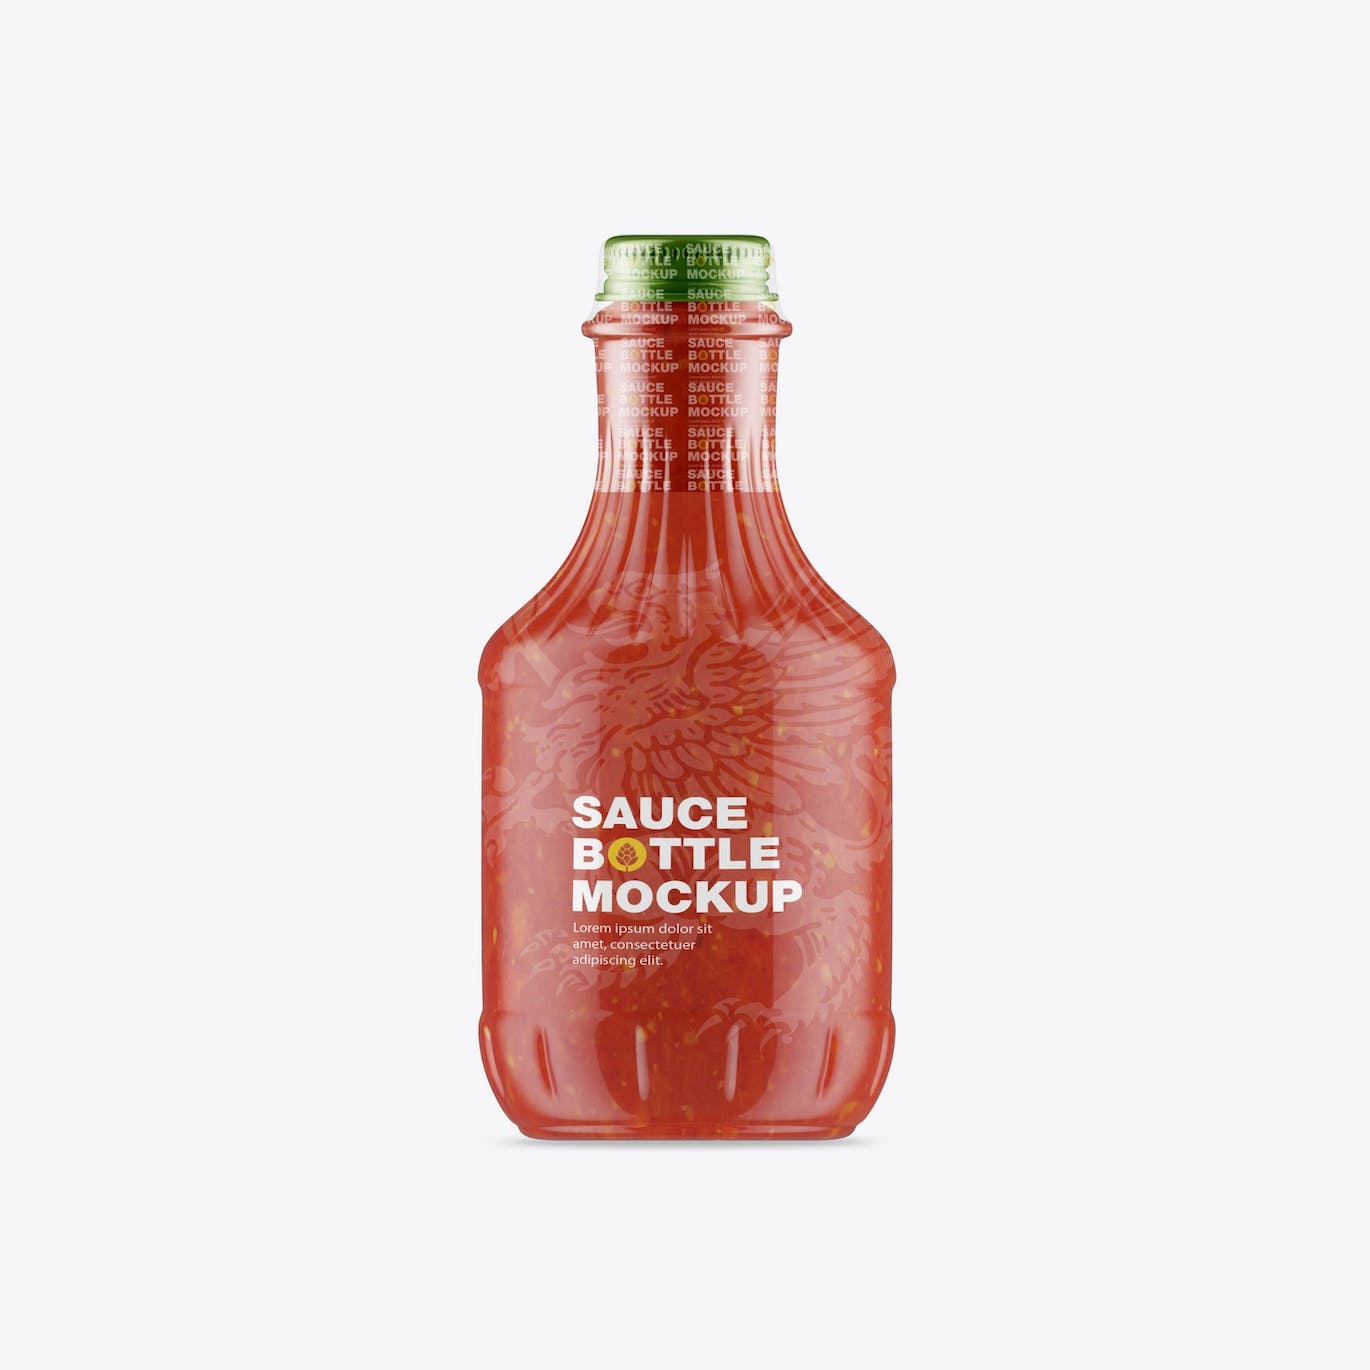 酱油瓶包装设计样机 Sauce Bottle Mockup 样机素材 第4张